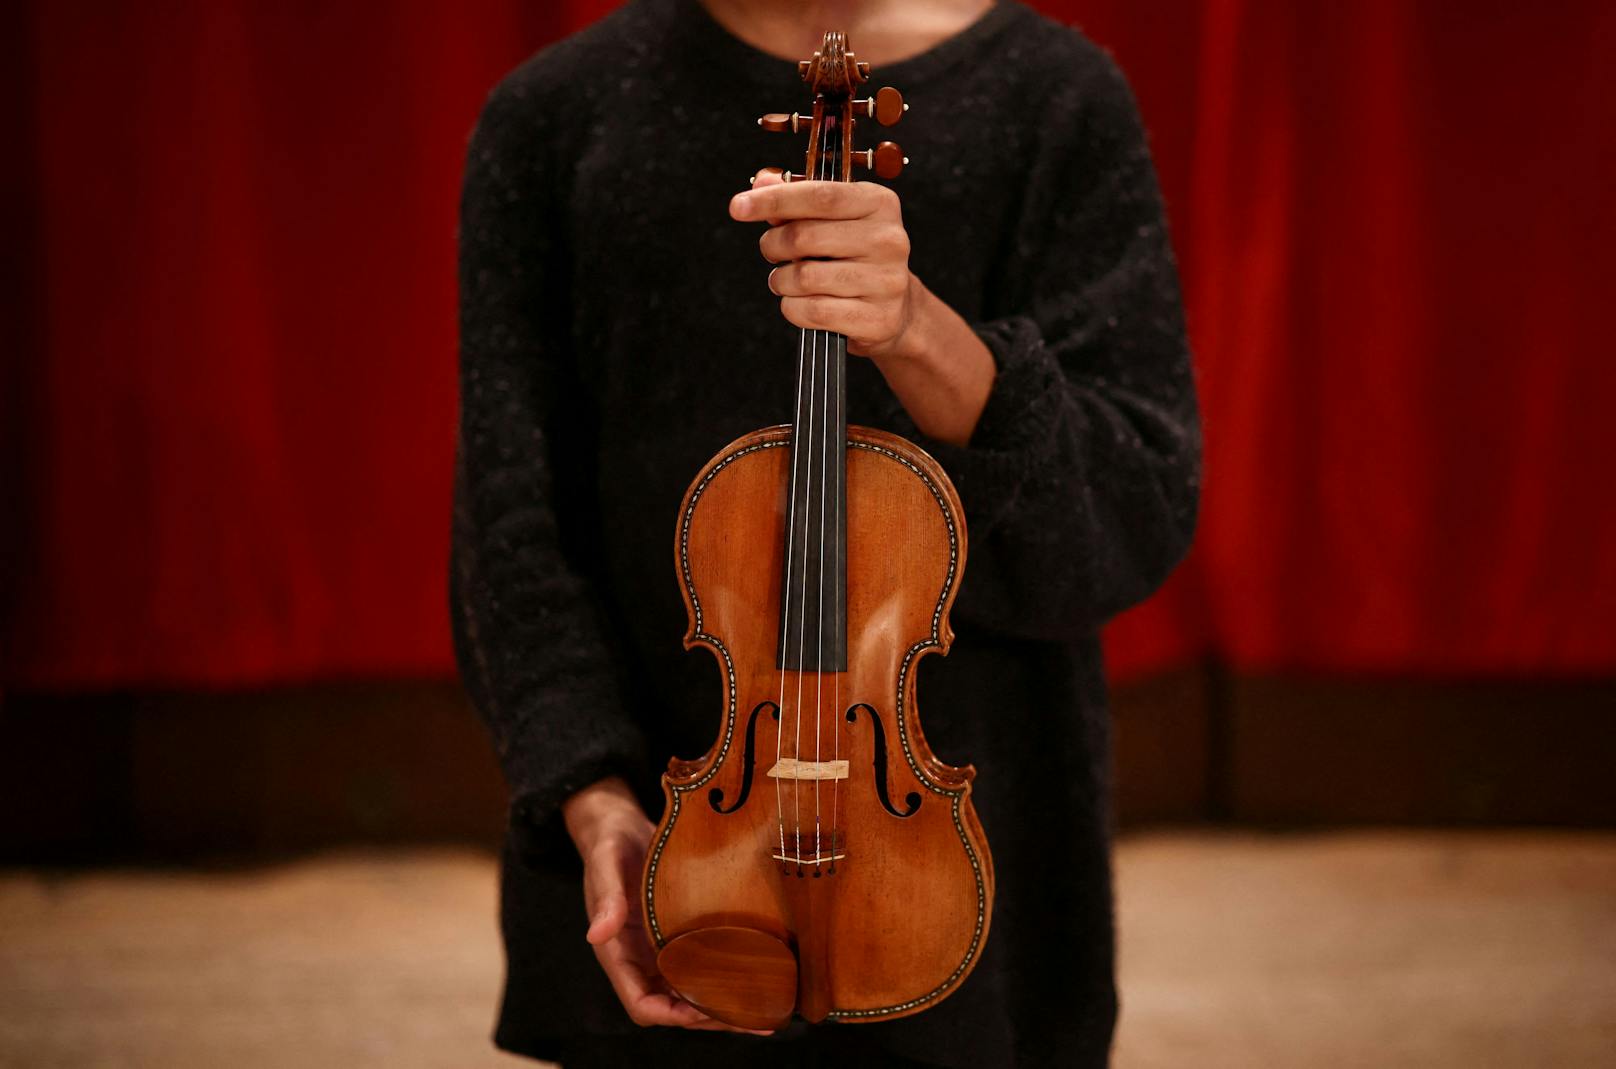 Die "Hellier" Stradivarius "ist die feinste eingelegte Geige, die je von Stradivari hergestellt wurde und eines der besten Stradivari-Instrumente, die es gibt", gibt das Auktionshaus Christie’s bekannt.